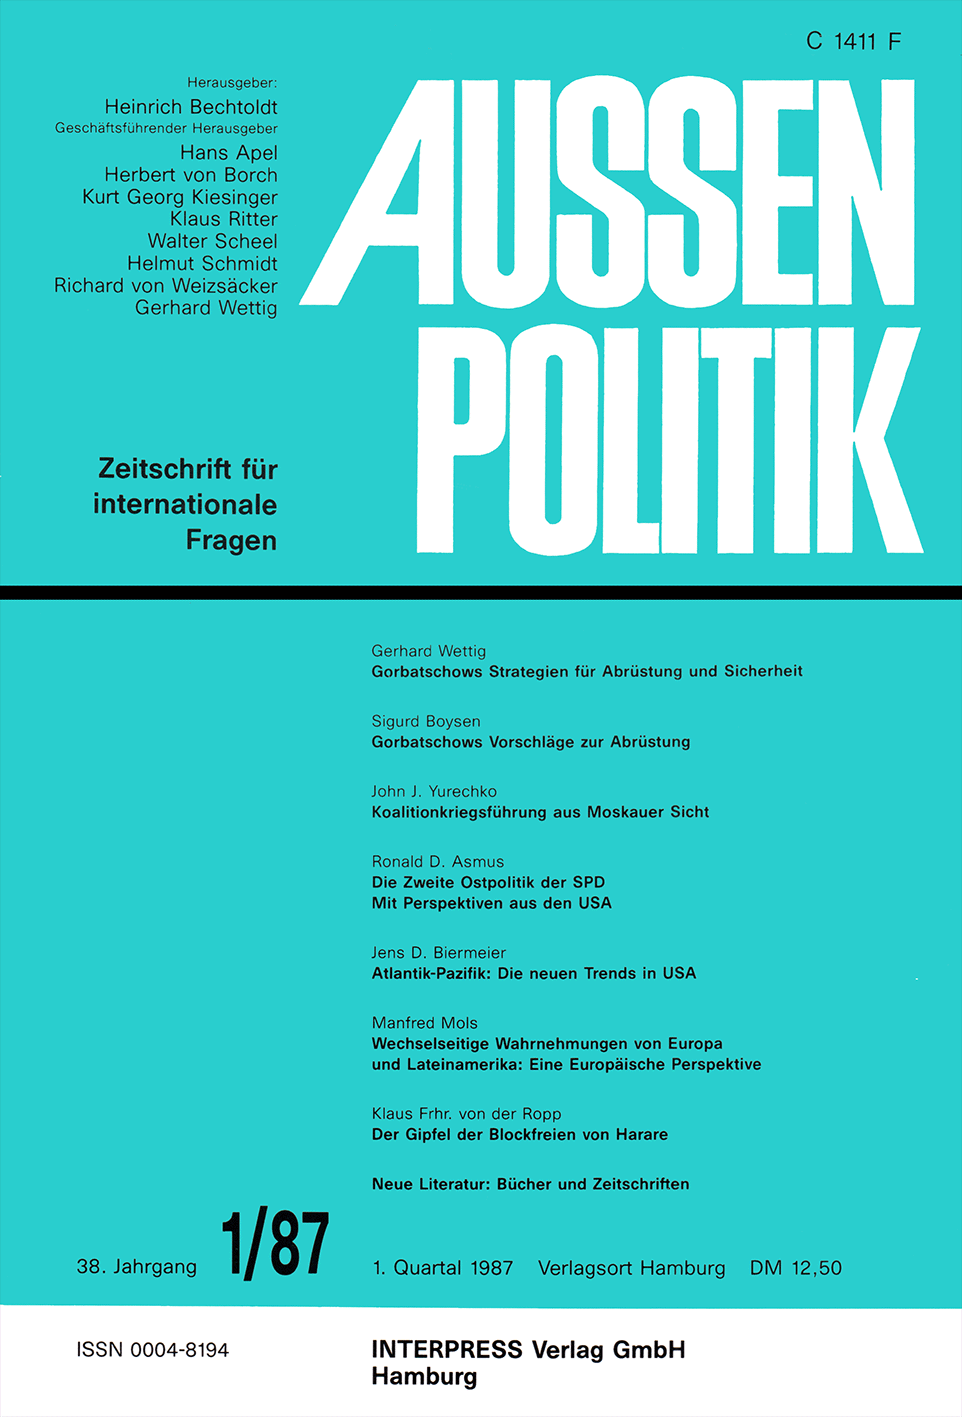 Aussenpolitik, issue 1/87, vol. 38, no. 1, 1987, p. 87-97;